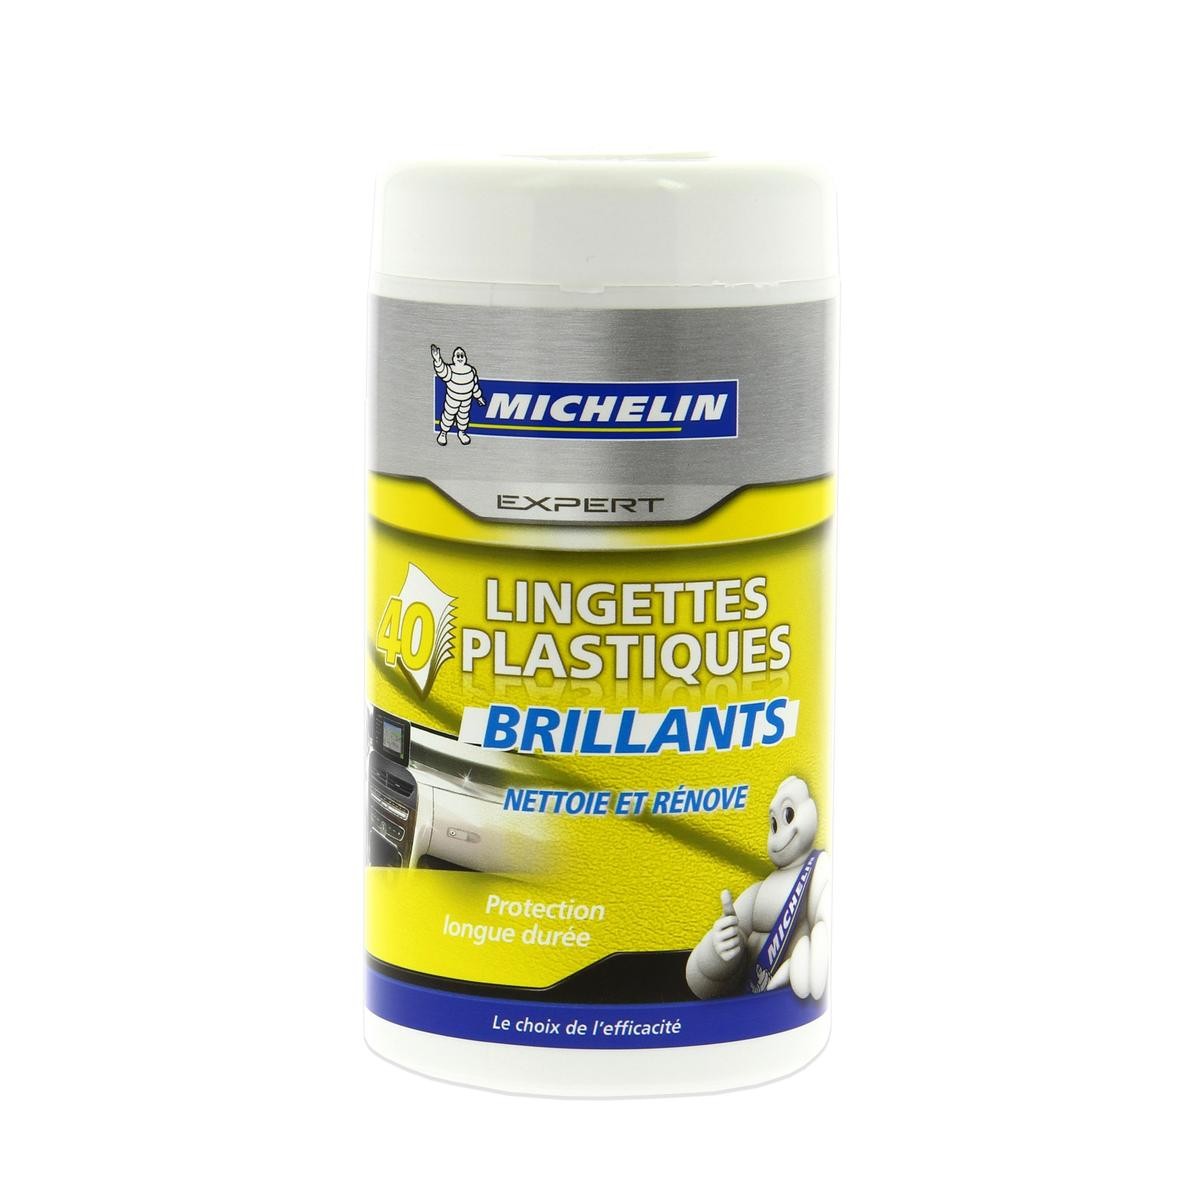 Salviettine detergenti Michelin 008886 conoscenze specialistiche